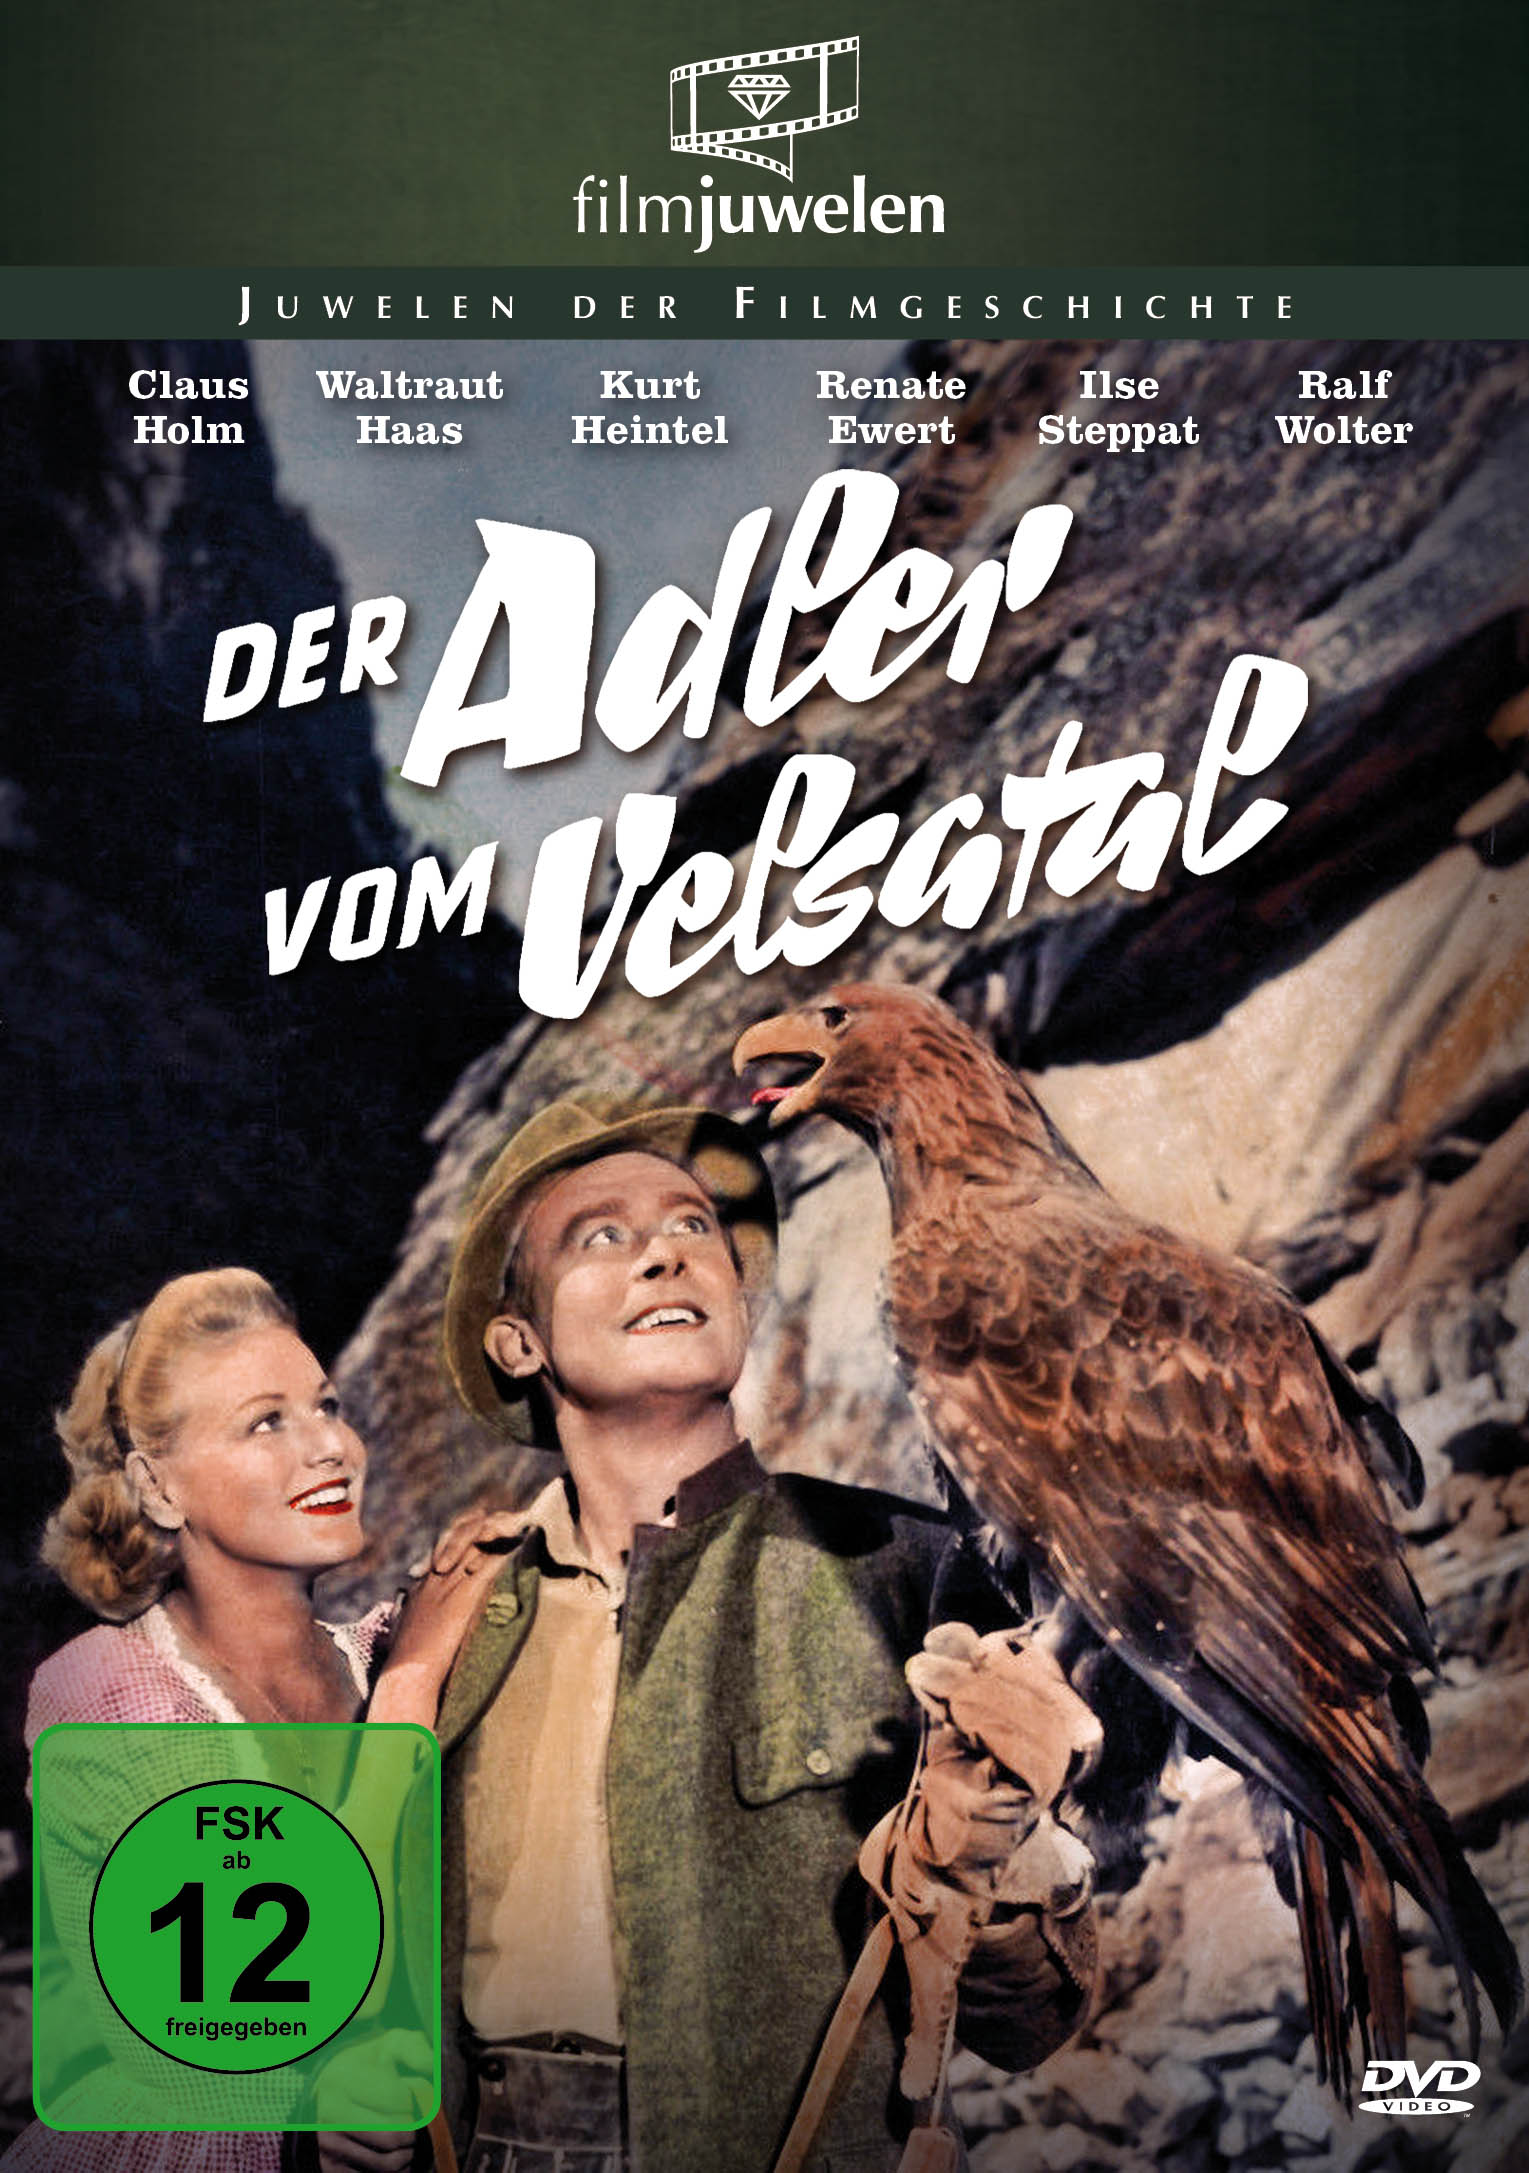 Der Adler DVD Velsatal vom